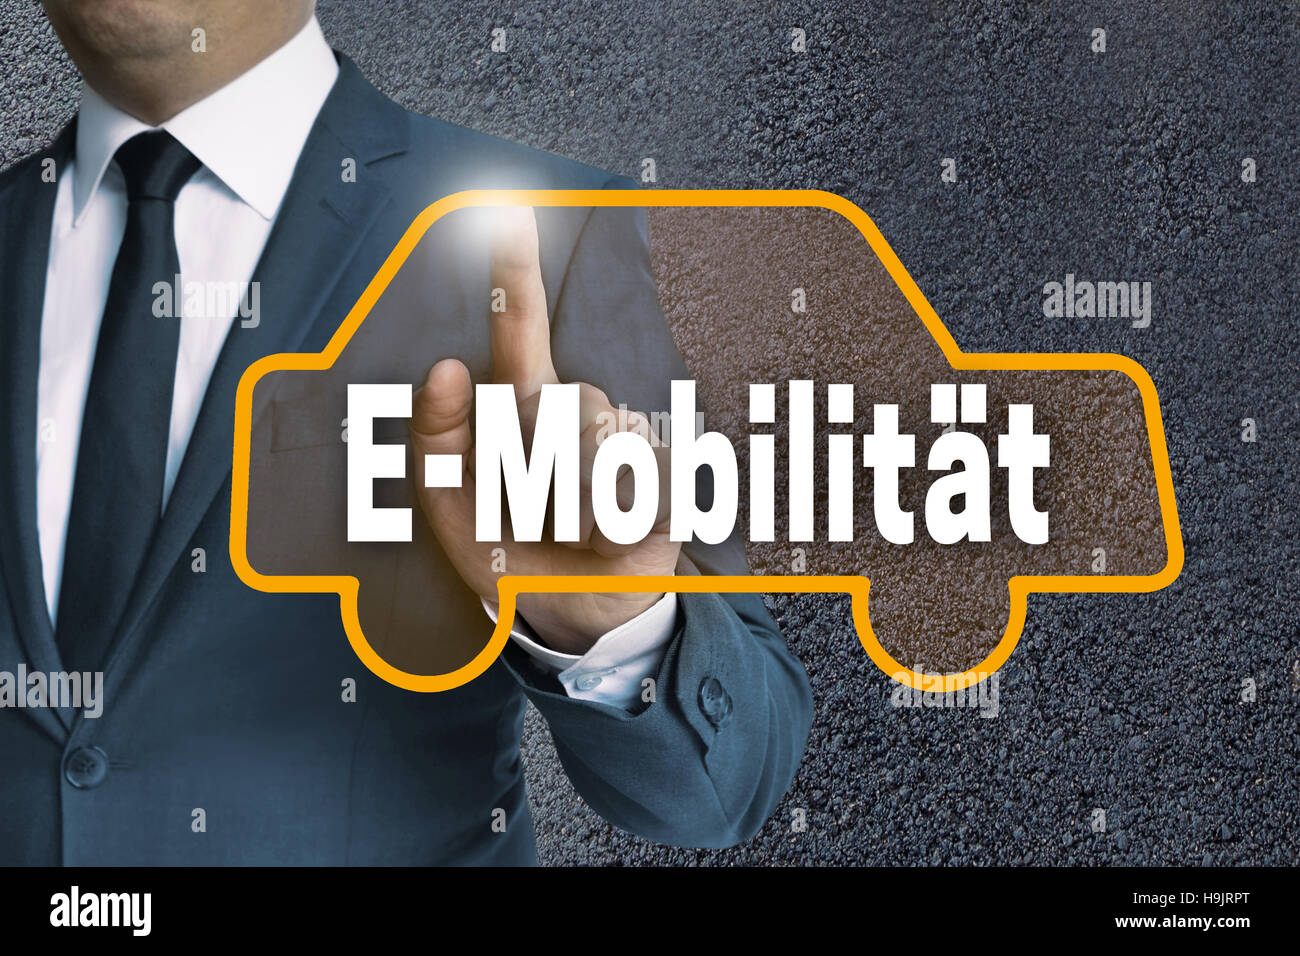 E-Mobilitaet (in tedesco e-mobility) touchscreen è mostrato da parte dell'imprenditore. Foto Stock